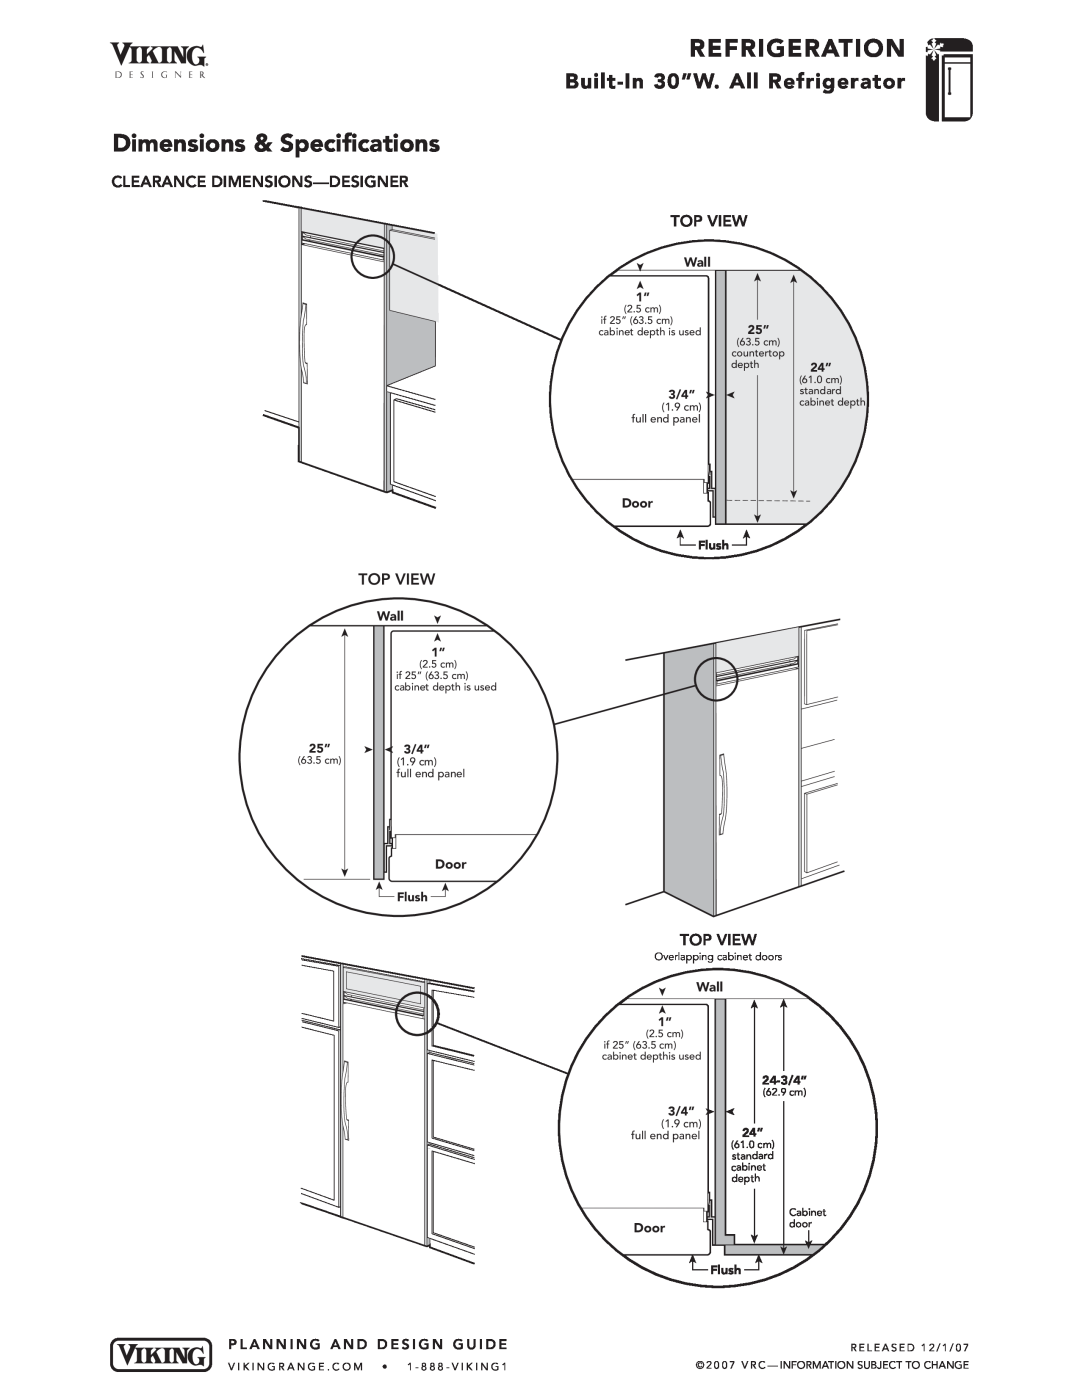 Viking DDRB304 Dimensions & Specifications, Refrigeration, Built-In 30”W. All Refrigerator, 3/4”, Door, Wall 1”, Flush 